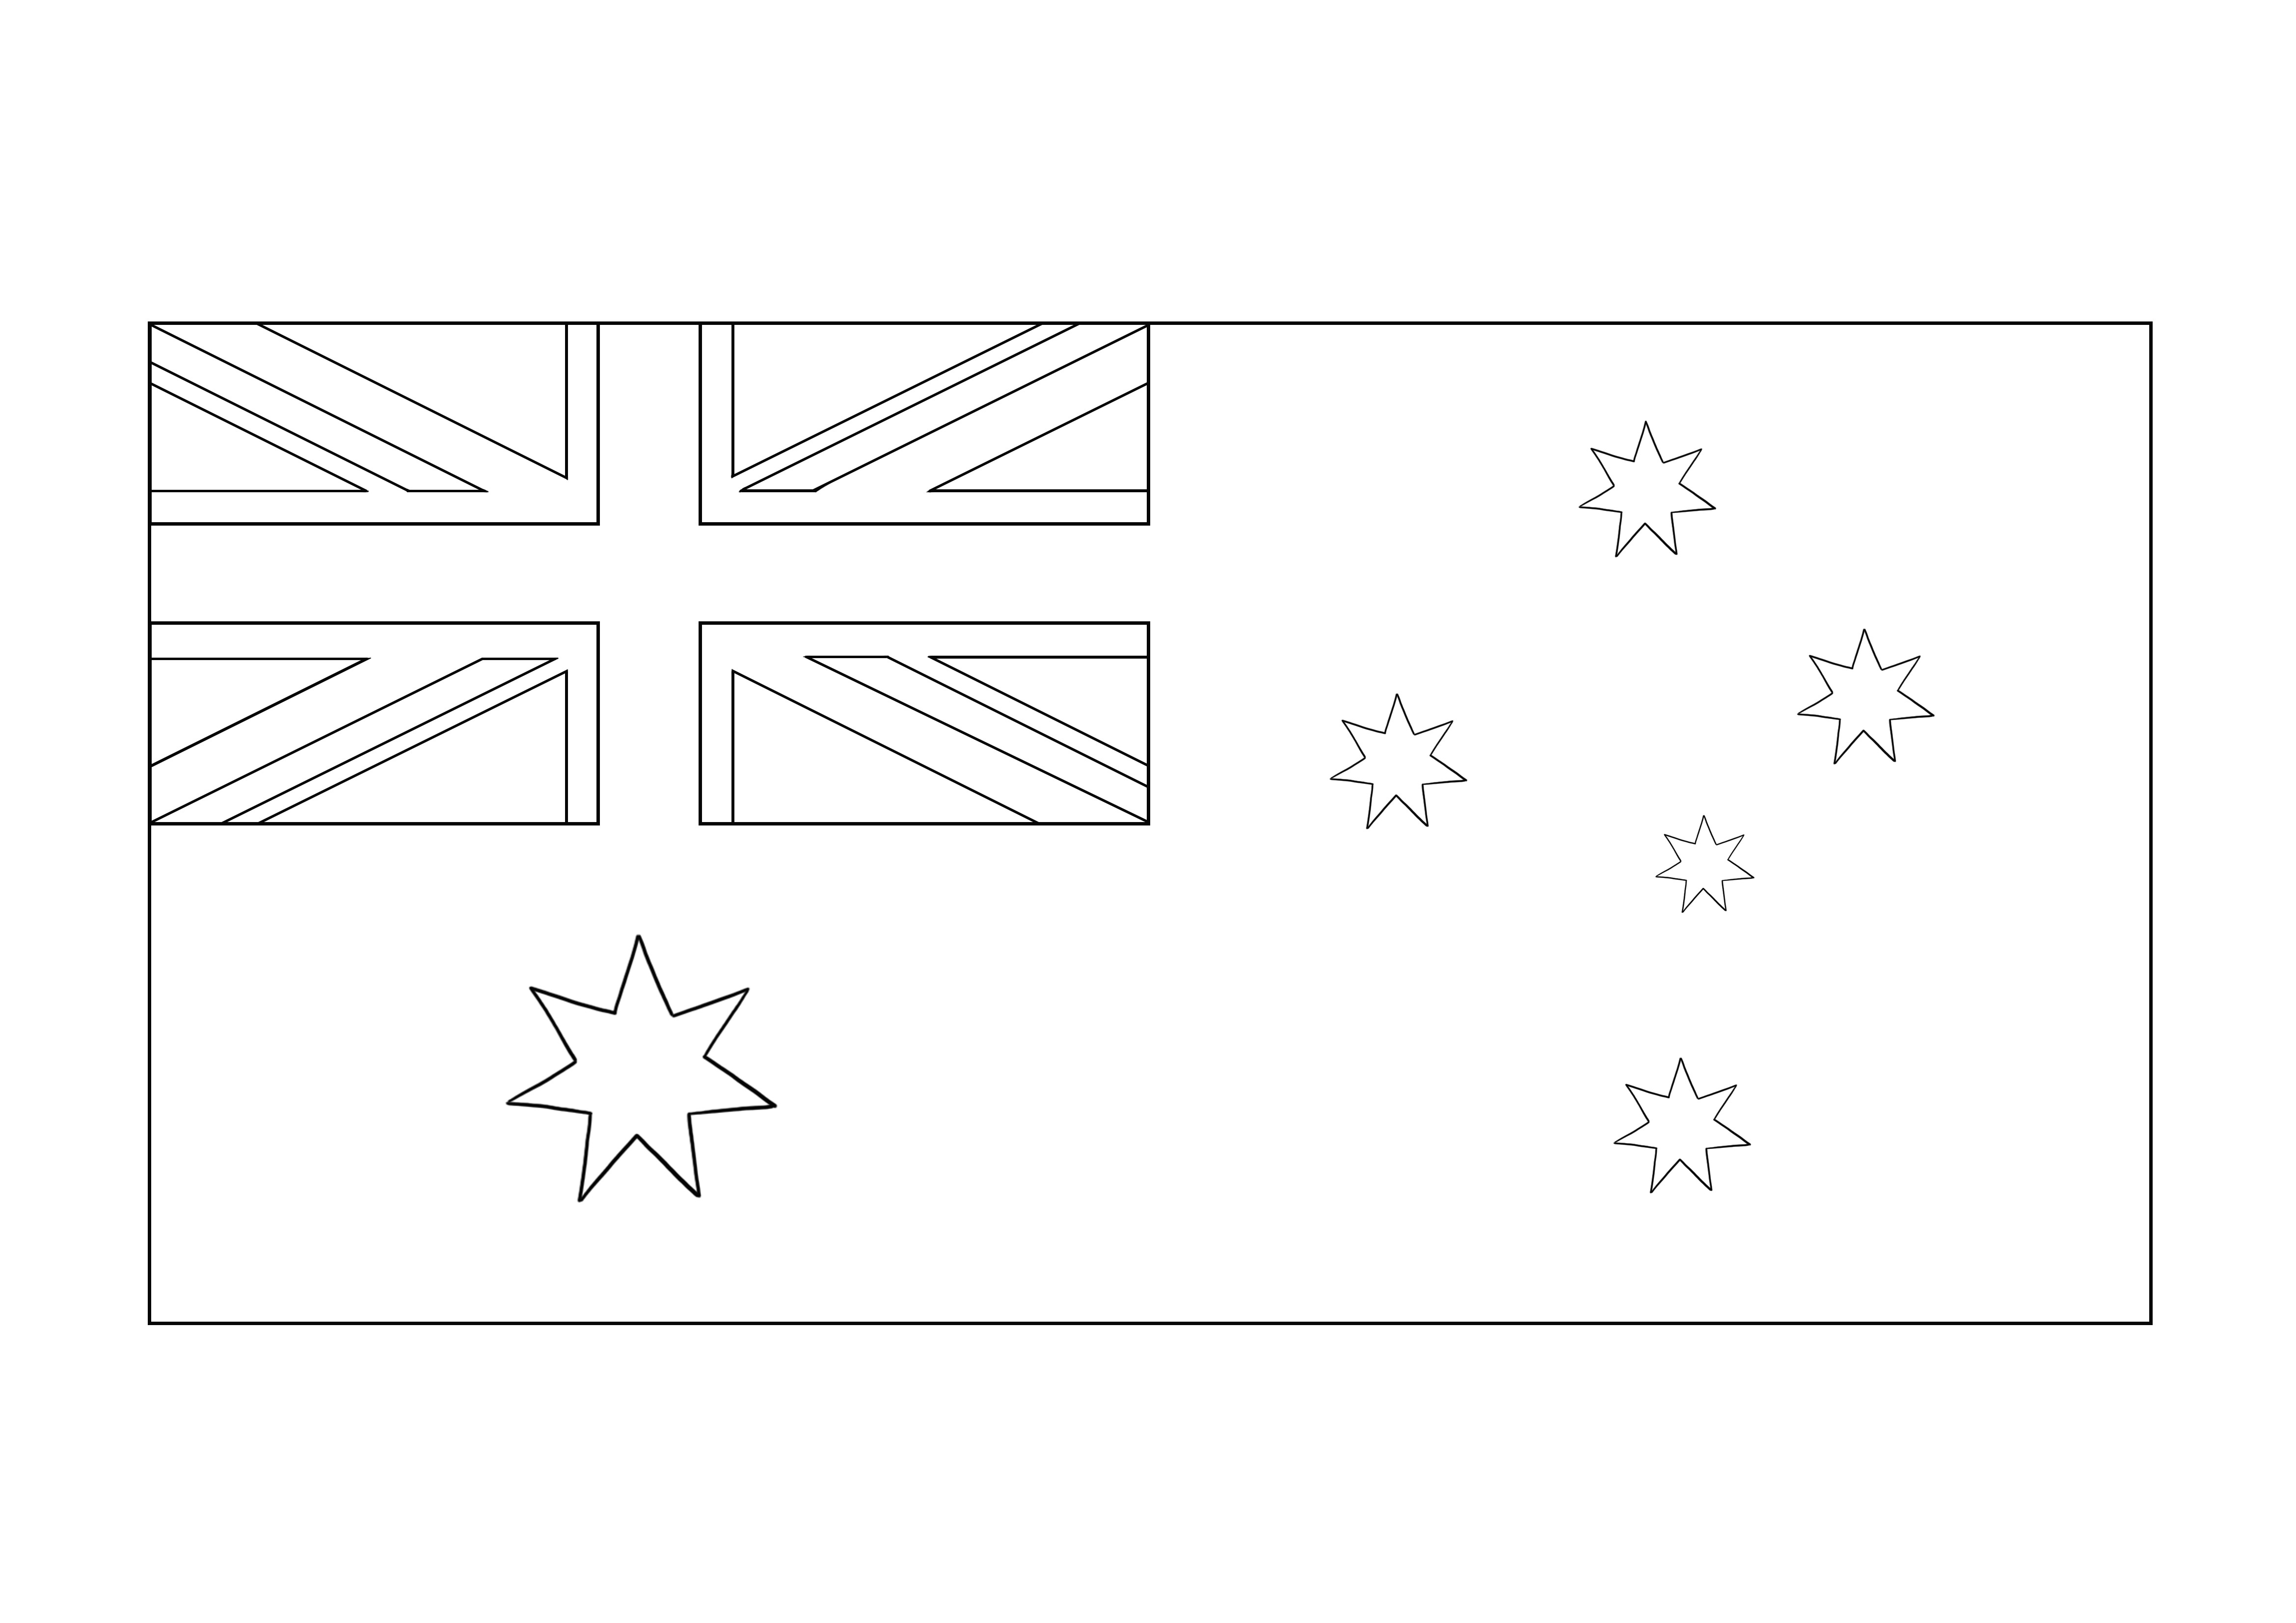 Hoja para colorear de la bandera australiana gratis para descargar y aprender sobre Australia